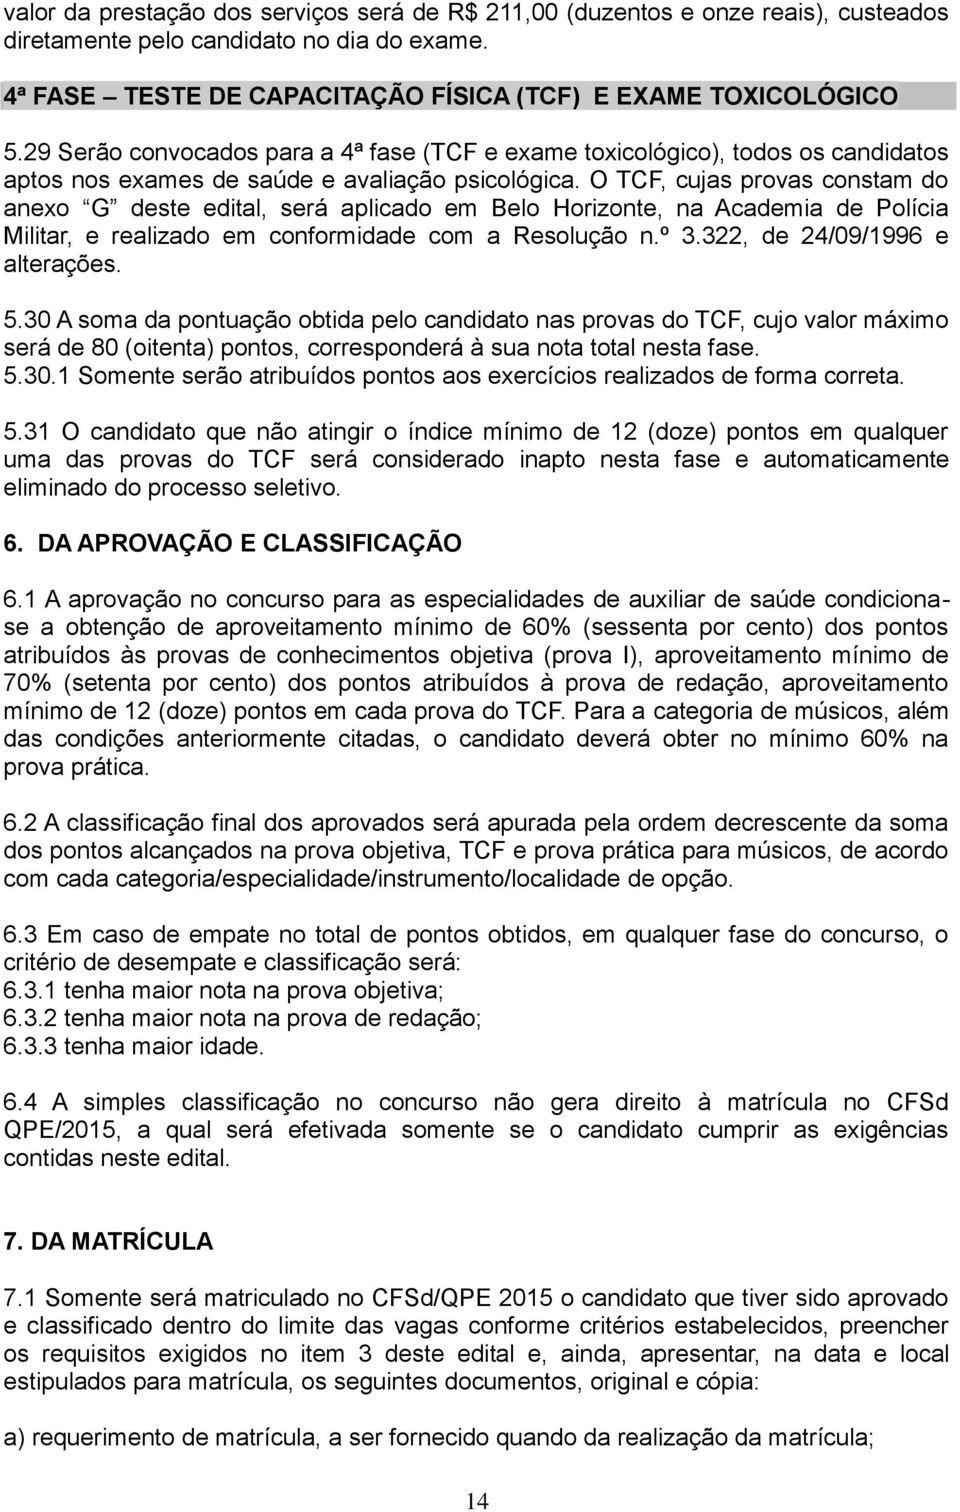 O TCF, cujas provas constam do anexo G deste edital, será aplicado em Belo Horizonte, na Academia de Polícia Militar, e realizado em conformidade com a Resolução n.º 3.322, de 24/09/1996 e alterações.